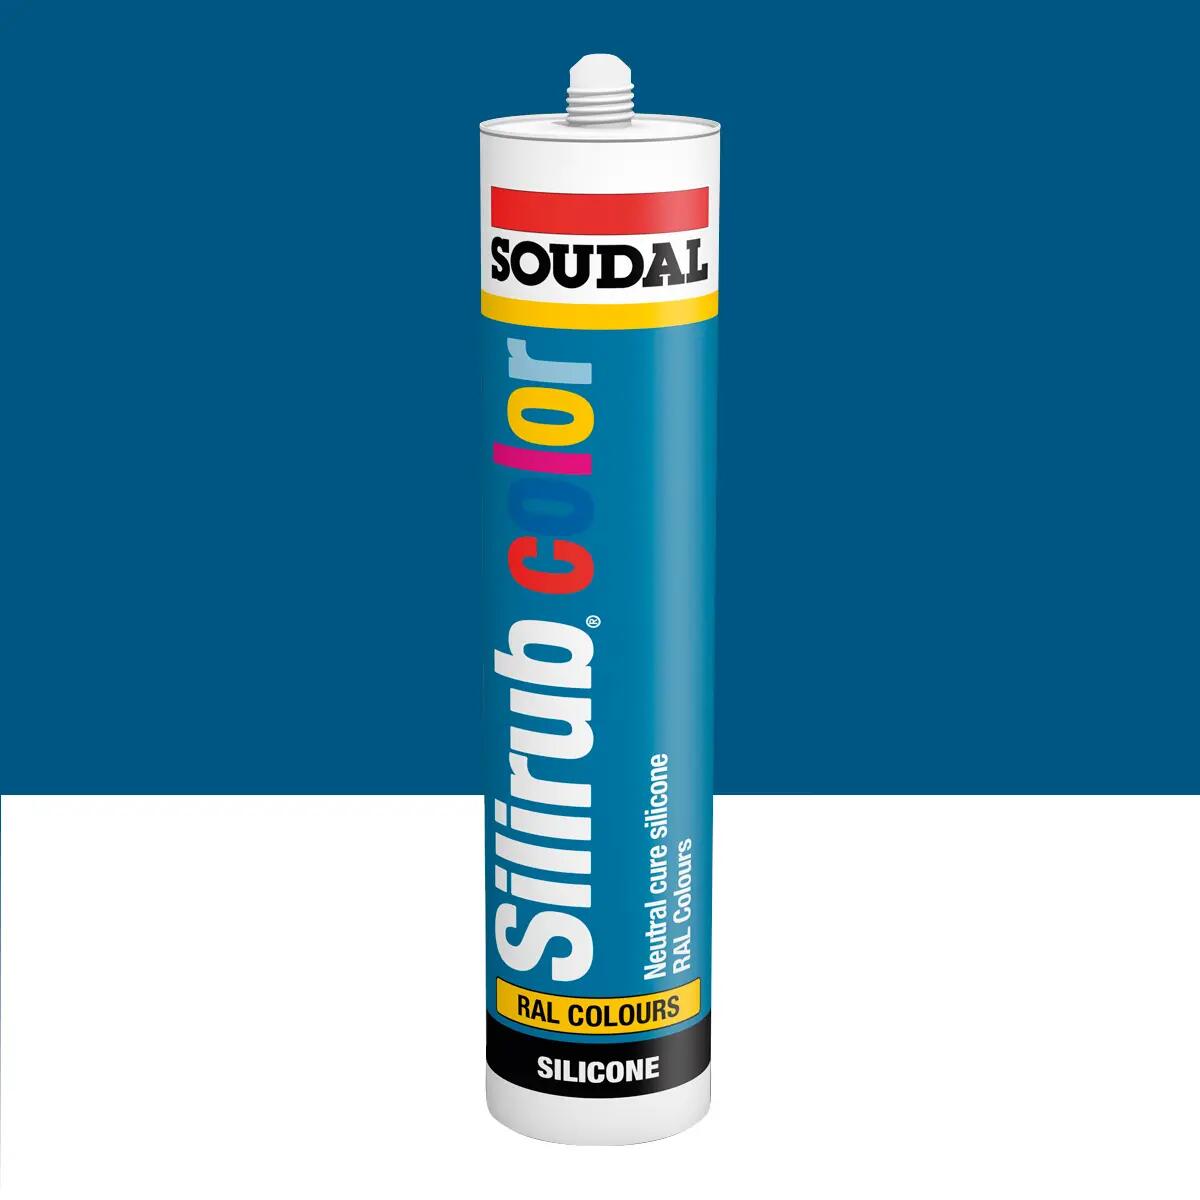 Silicone sigillante SOUDAL Multiuso Colorato RAL 5010 blu genziana 300 ml